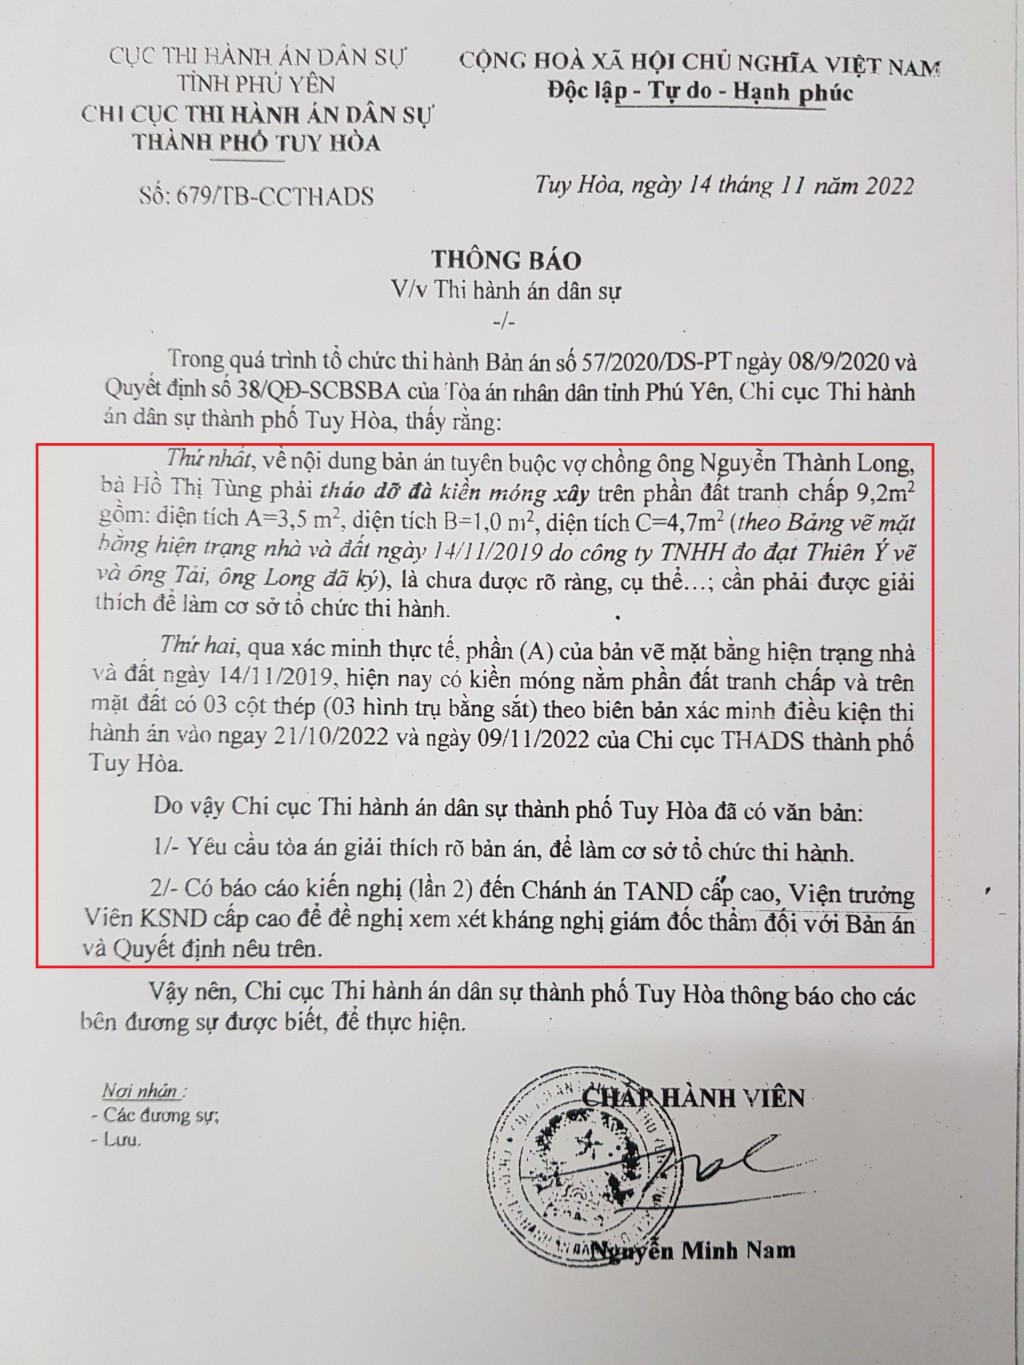 Thông báo của Chấp hành viên Nguyễn Minh Nam